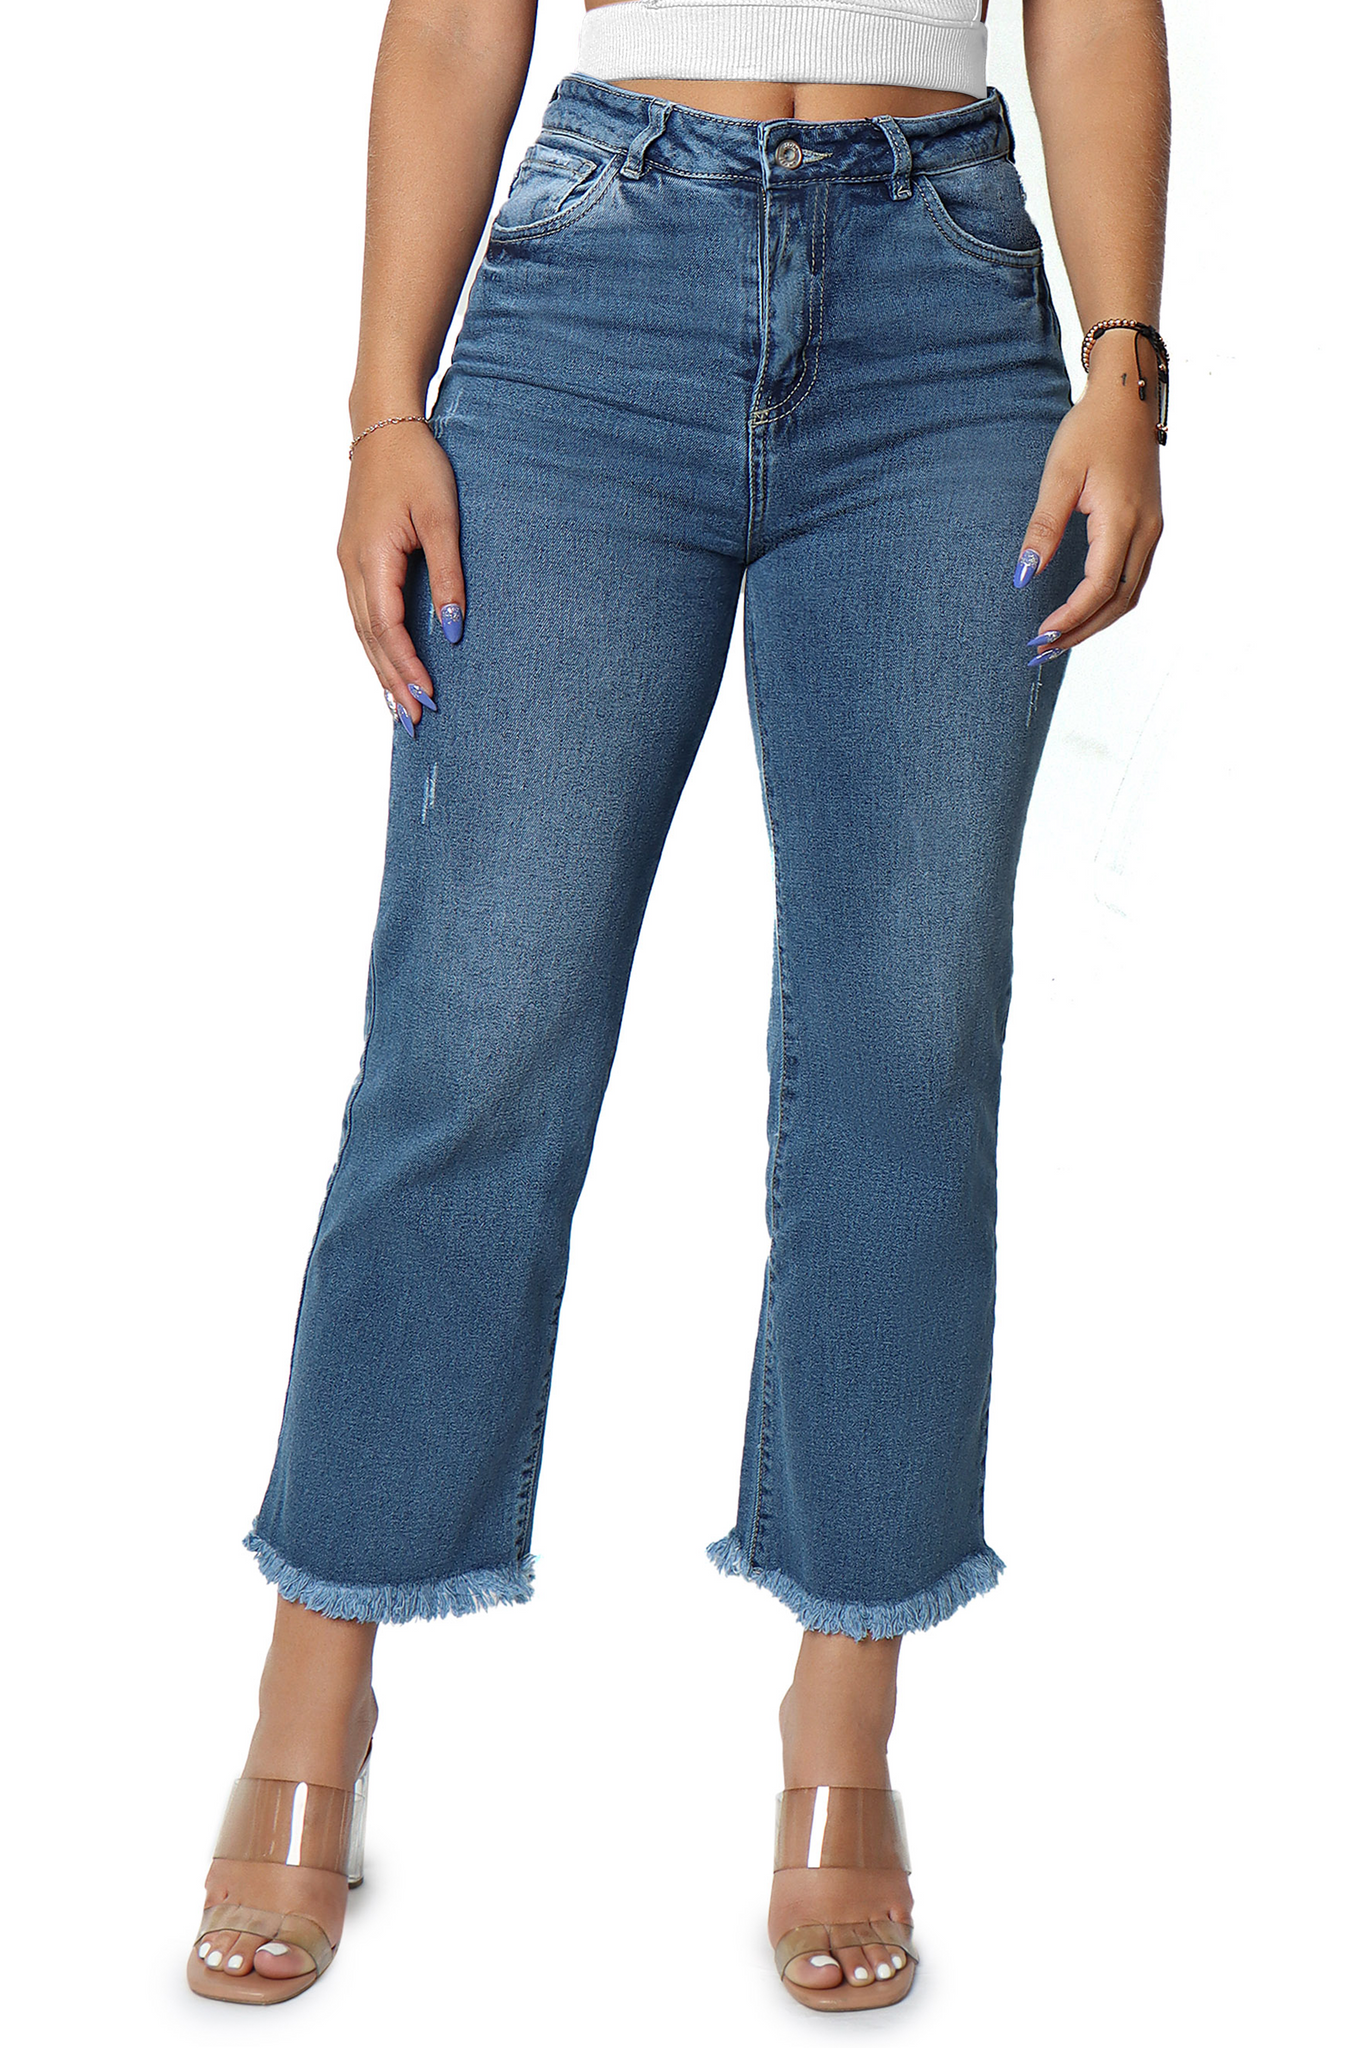 Cropped jean con fleco bajo - 812054